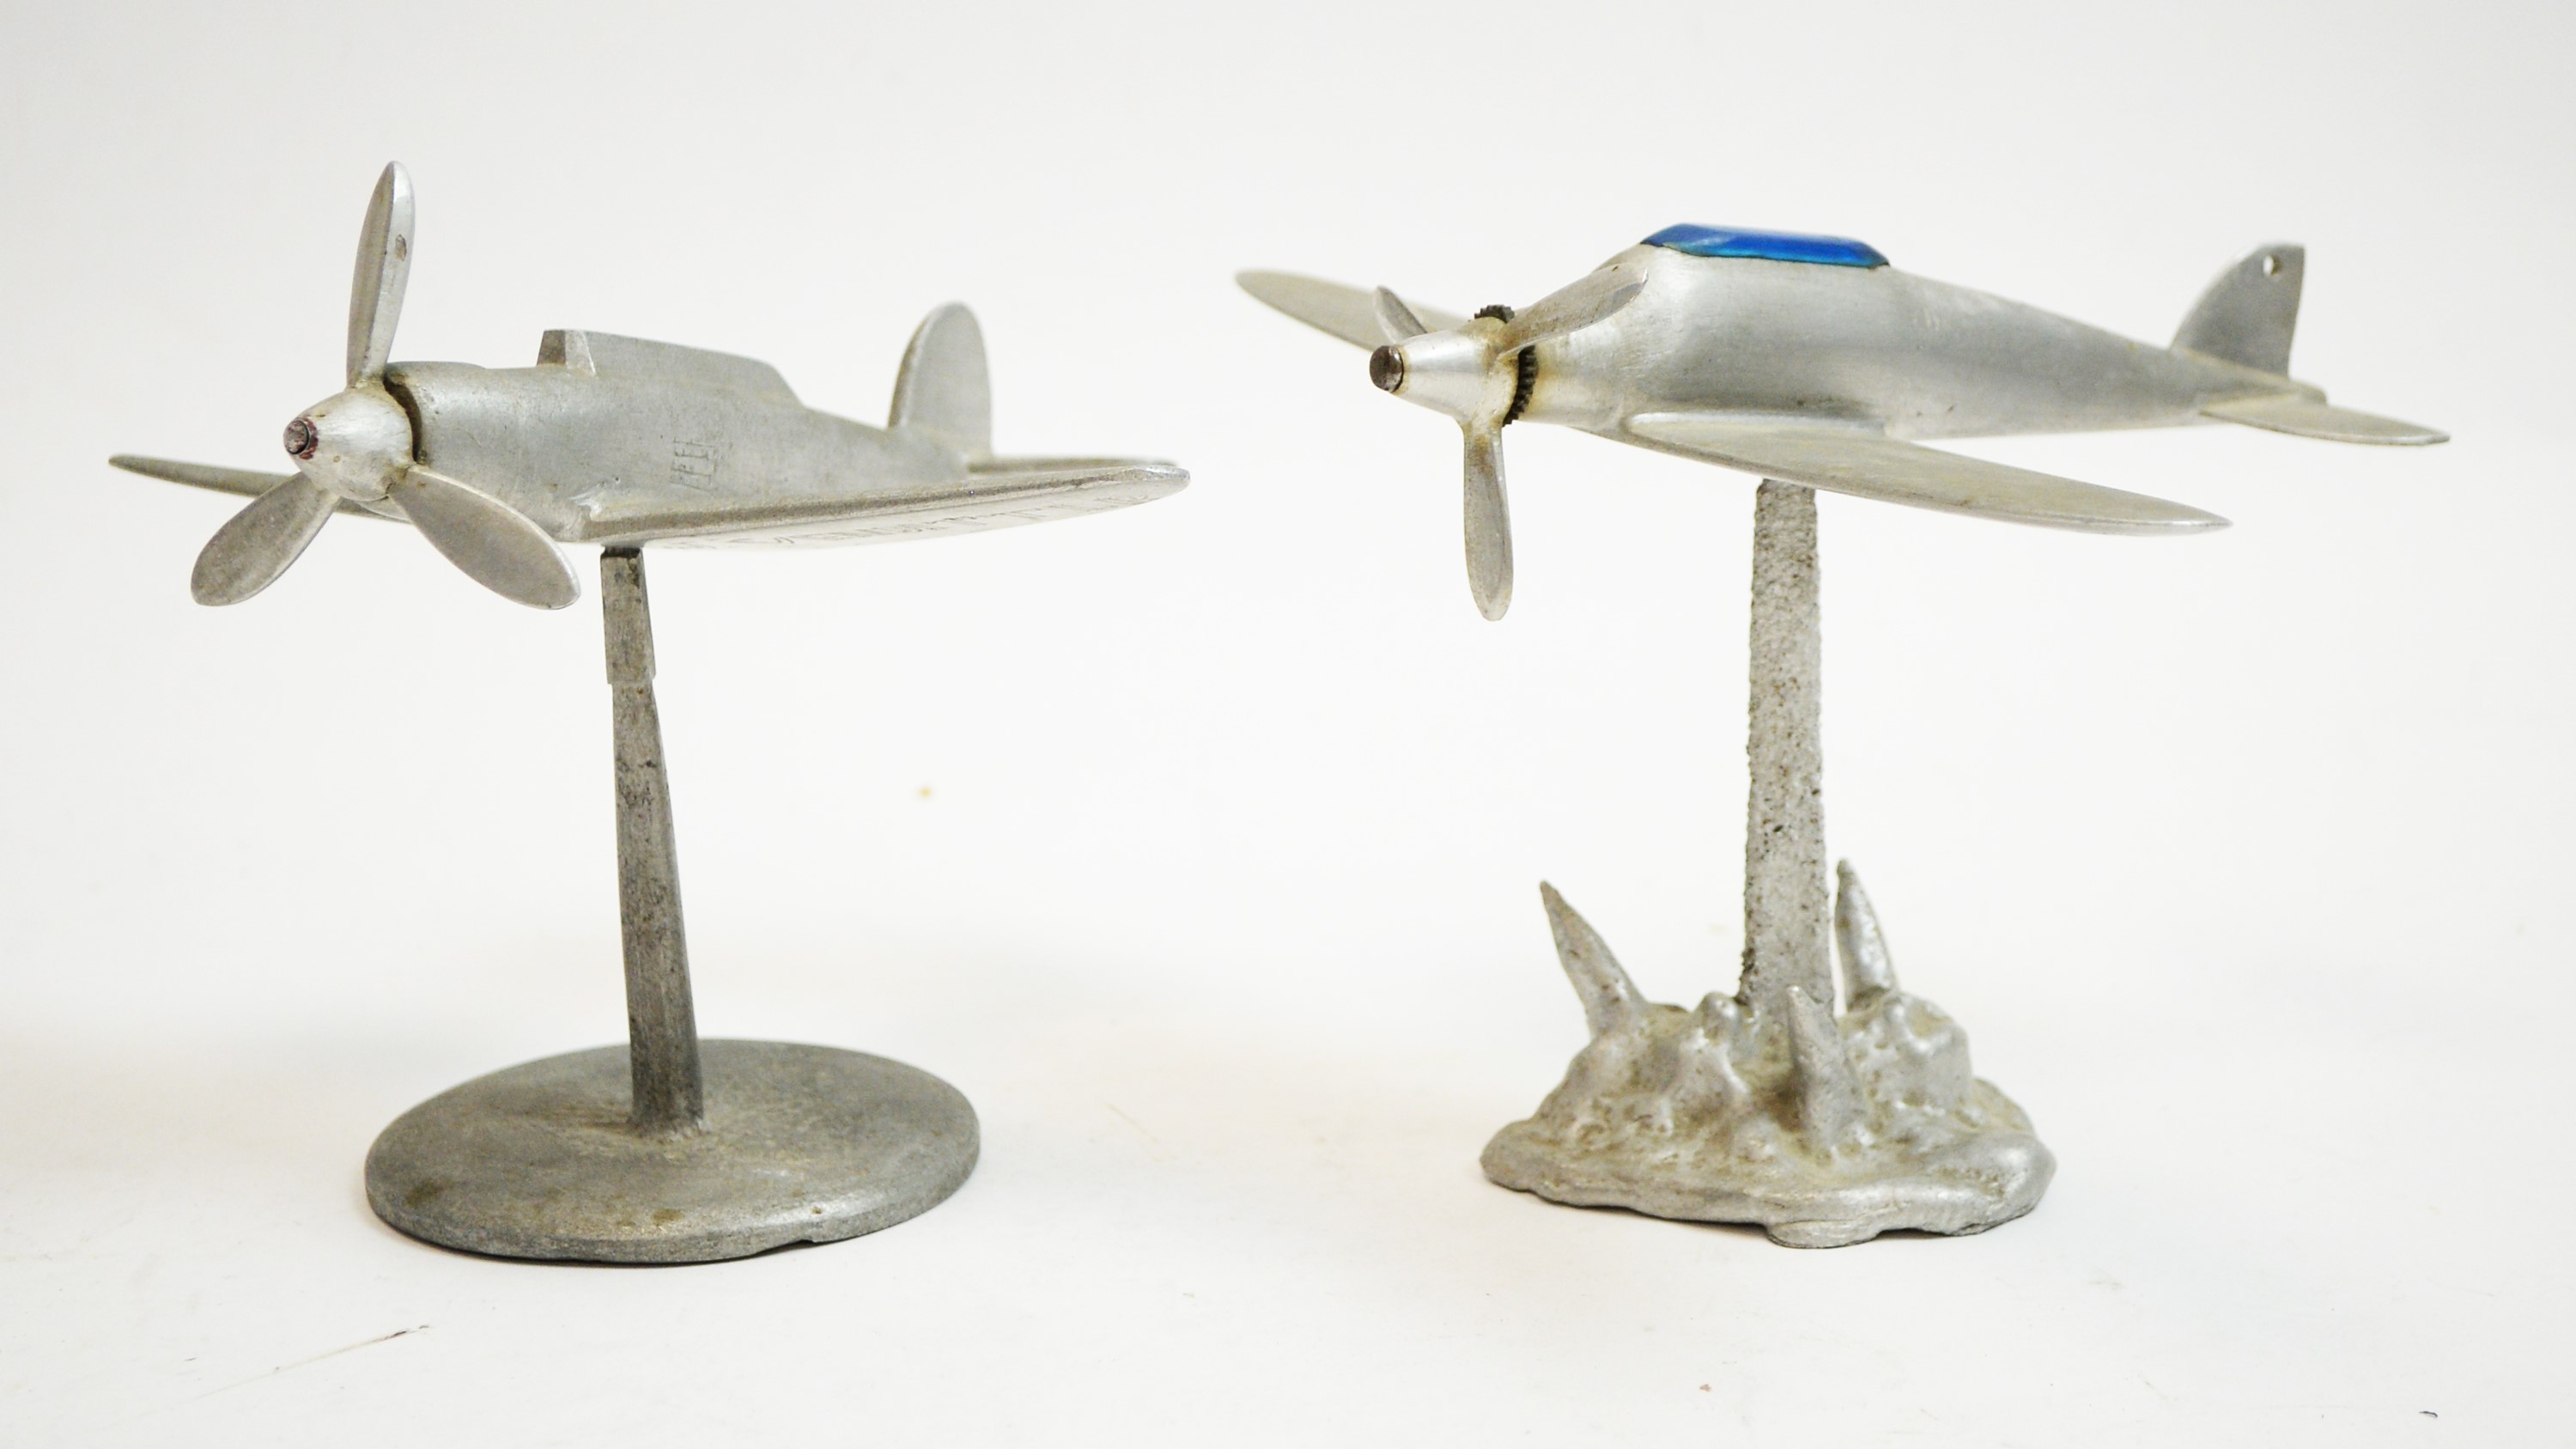 Two World War II period Italian model aeroplanes.